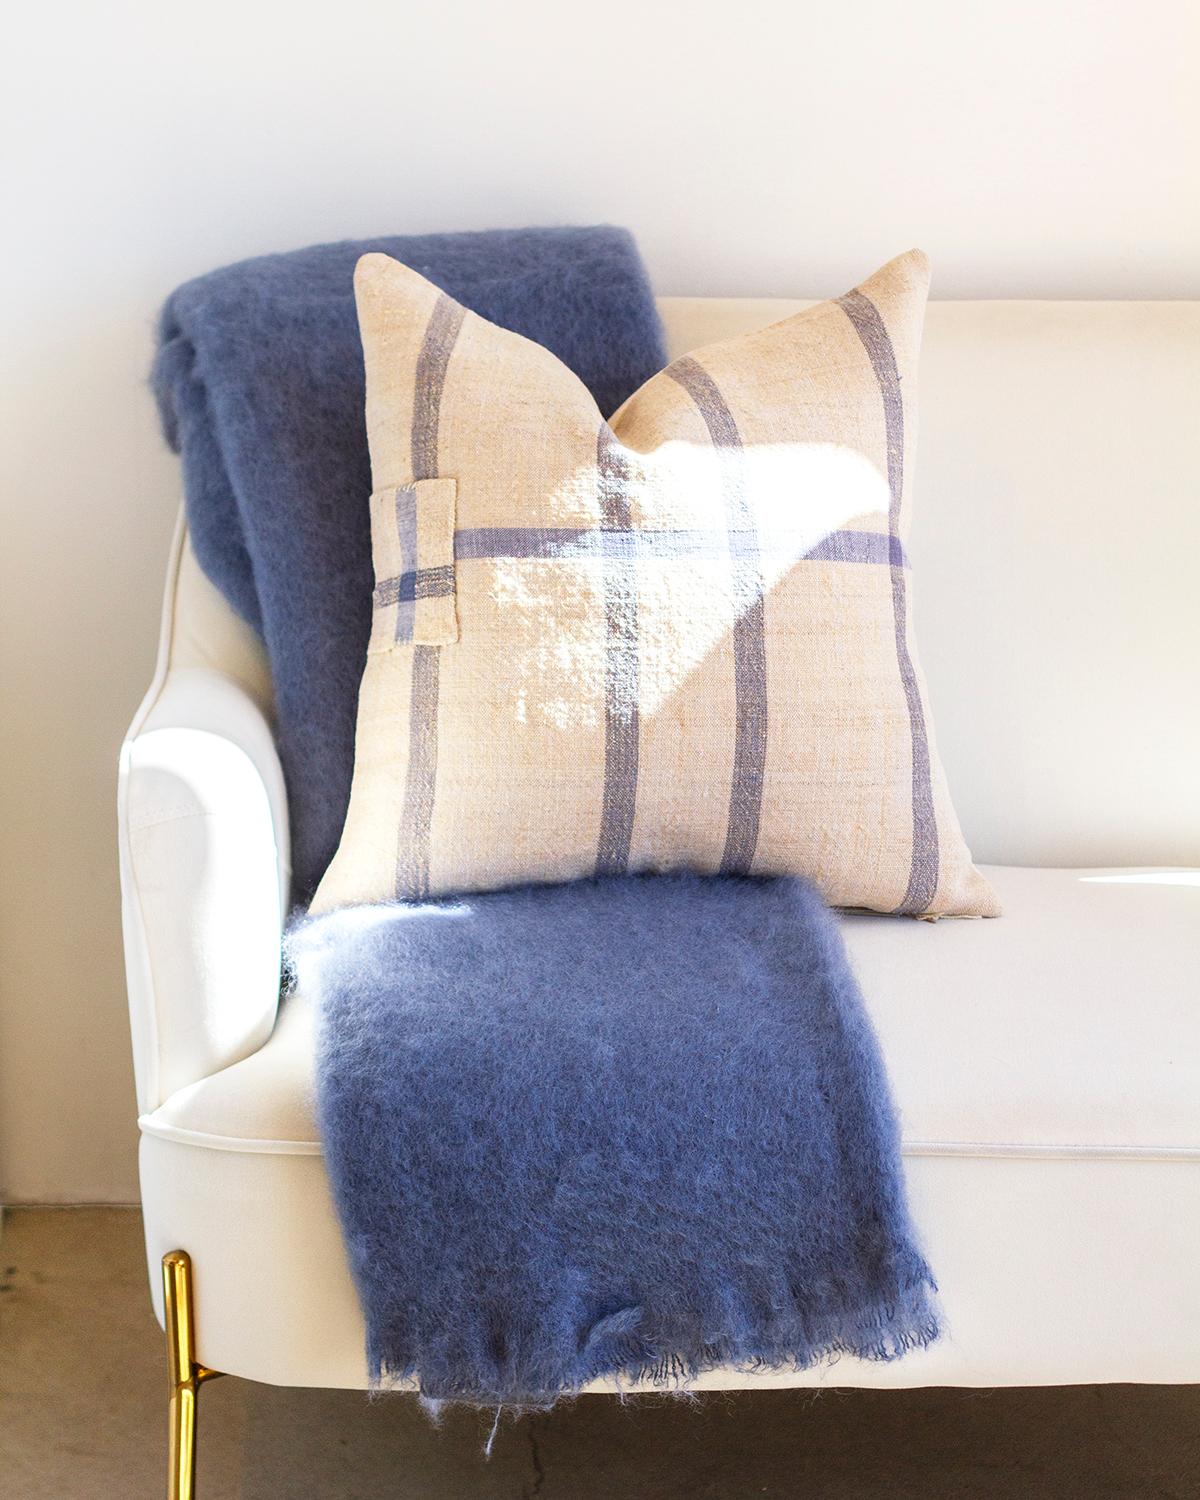 Diese luxuriöse staubblaue Mohair-Decke ist aus hochwertigem Mohair gefertigt und bietet ein Maximum an Gemütlichkeit und Wärme. Seine weiche, flauschige Textur verleiht jedem Wohnambiente einen luxuriösen Touch. Diese Decke eignet sich perfekt für